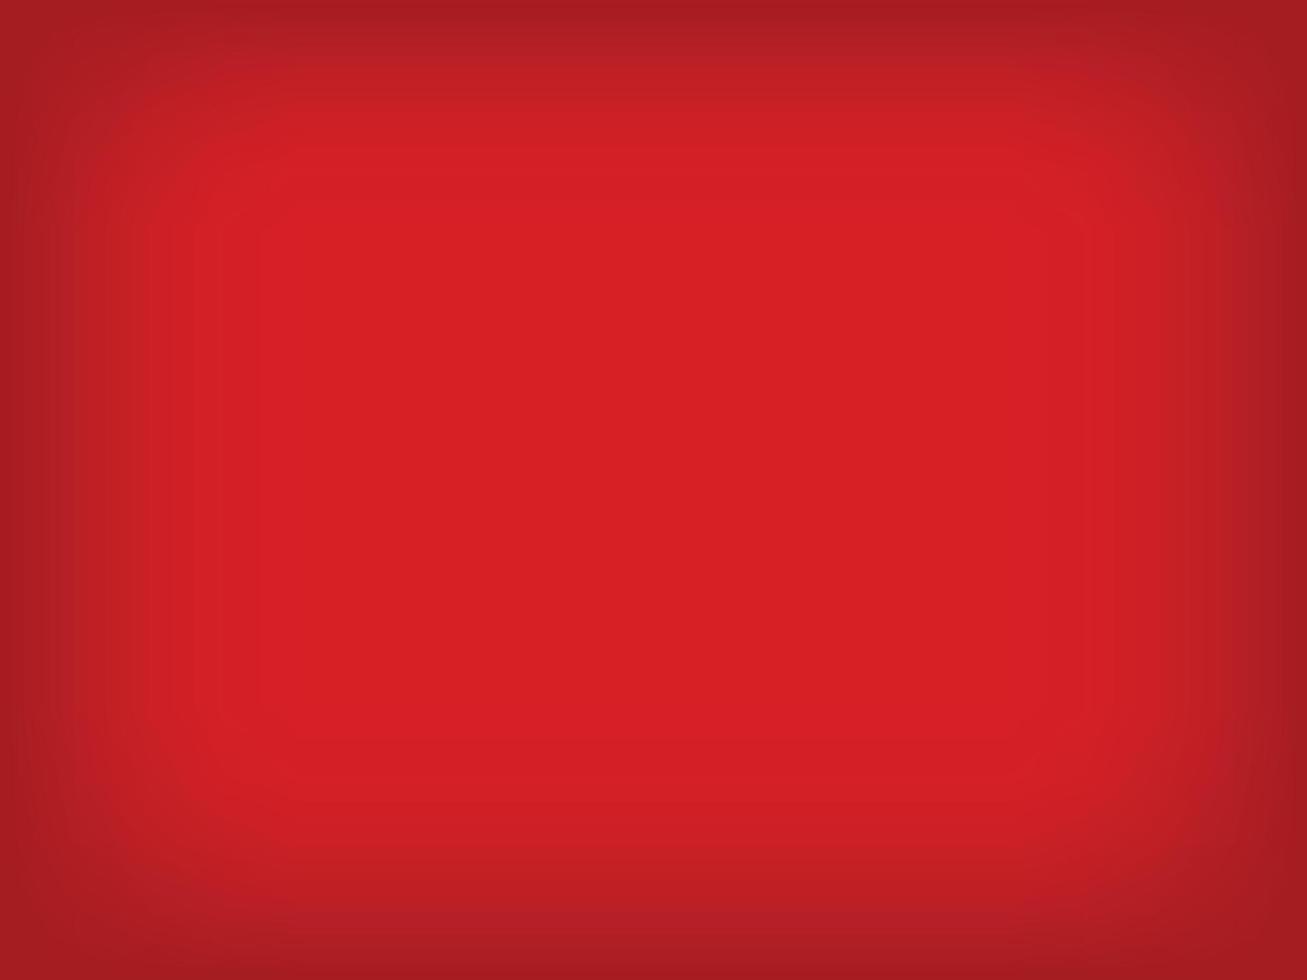 abstrait dégradé rouge background.wallpapers pour noël, nouvel an chinois ou decoration.vector illustration. vecteur